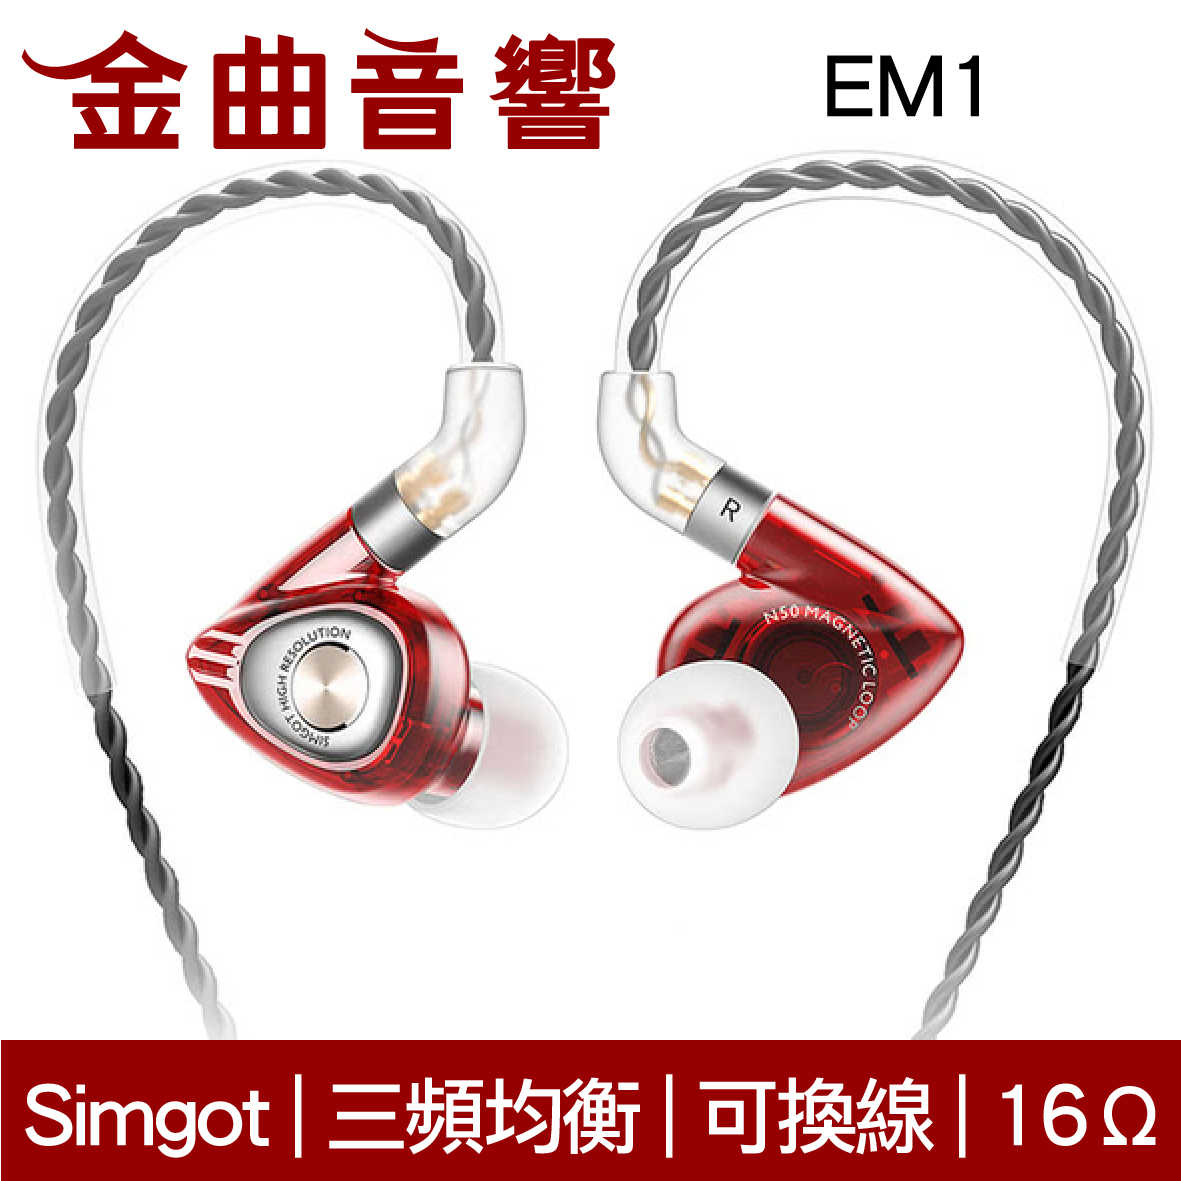 SIMGOT 銅雀 EM1 典雅黑 洛神系列 動圈 入耳式耳機 | 金曲音響